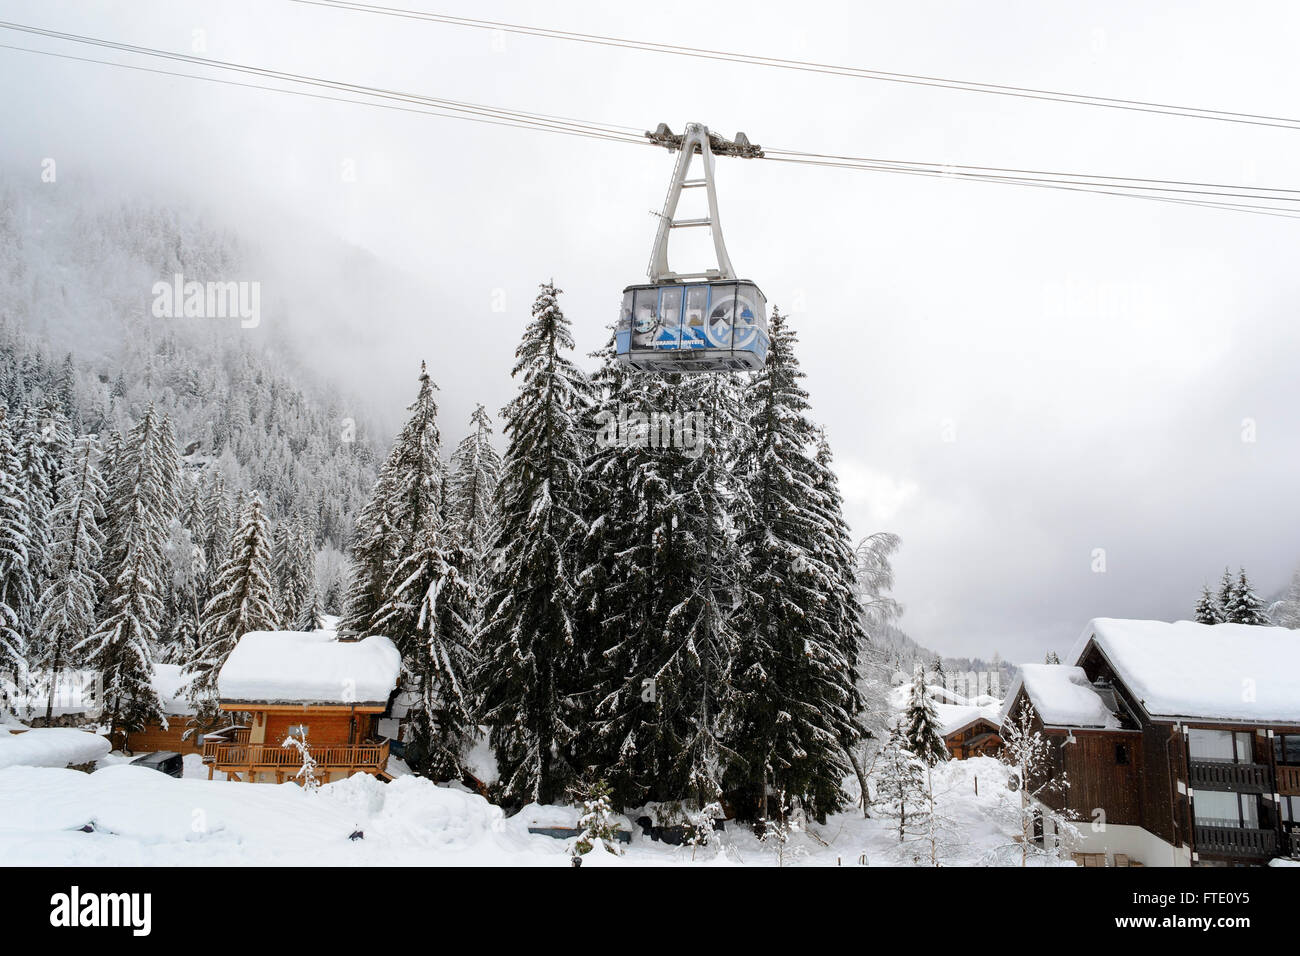 Die Drahtseilbahn Gondel gegen einen verschneiten Tannenwald und die alpinen Häuser Stockfoto